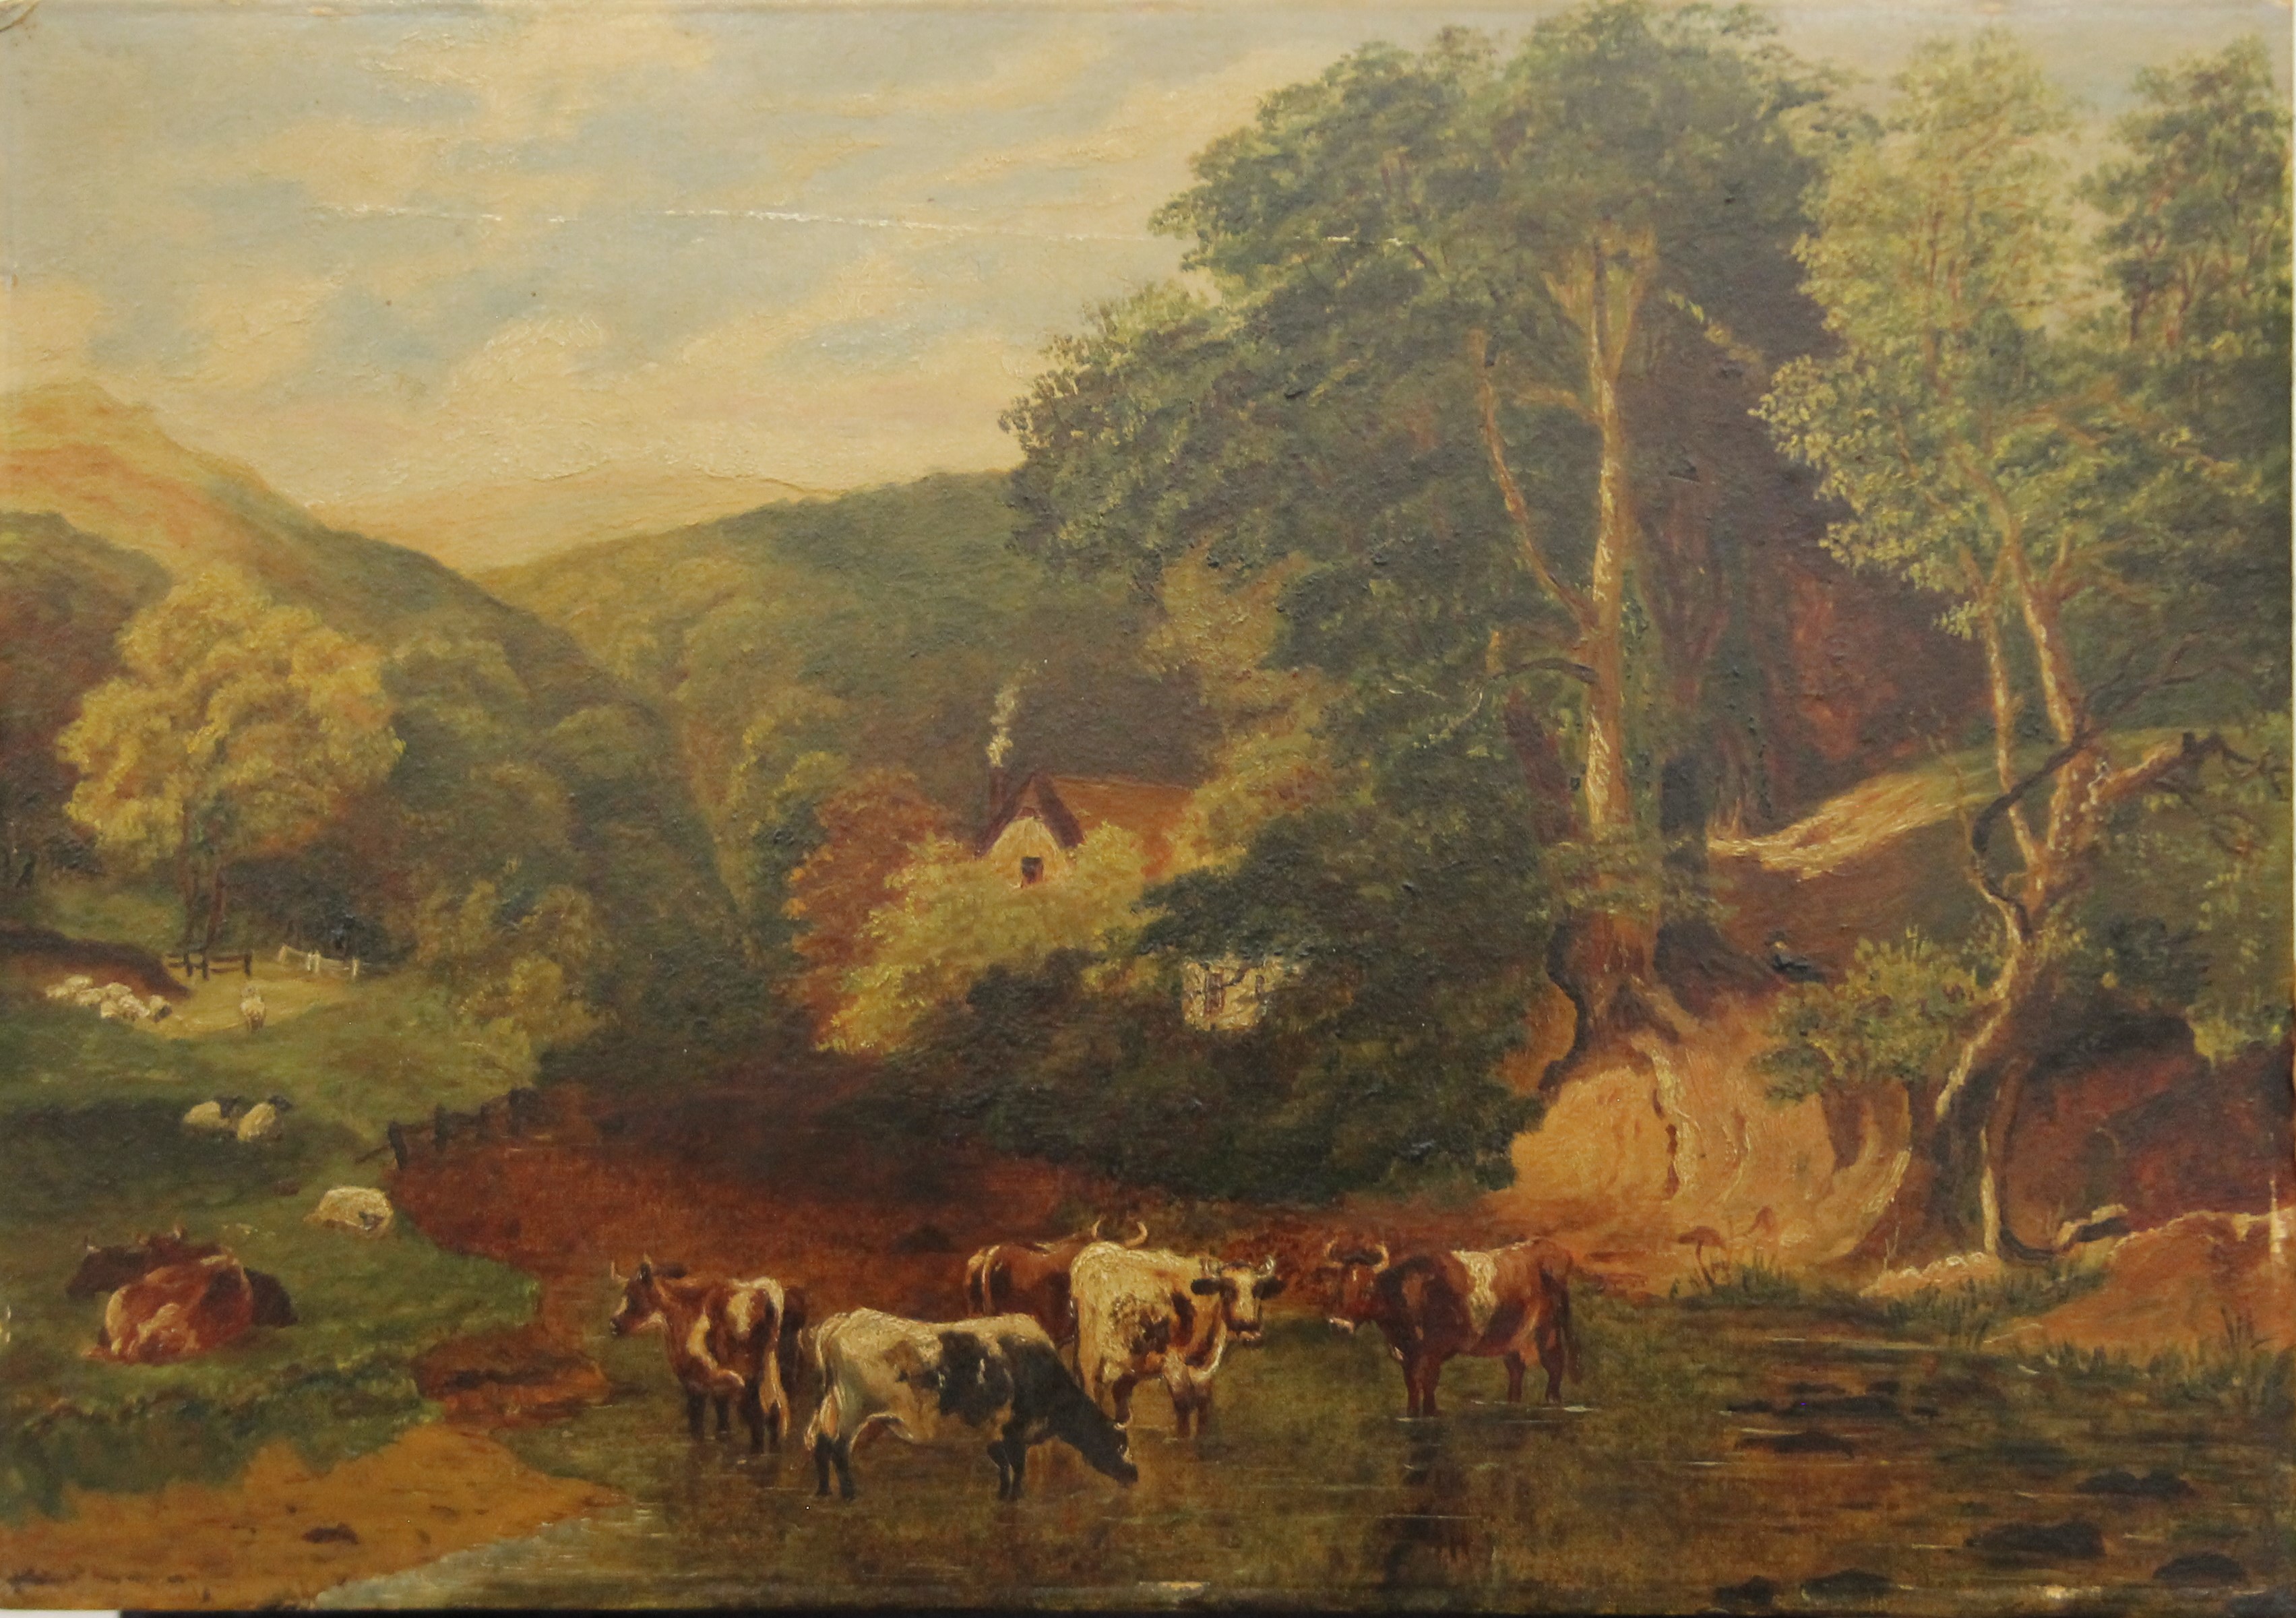 Cattle in a Stream, oil on board, unframed. 50.5 x 30.5 cm.